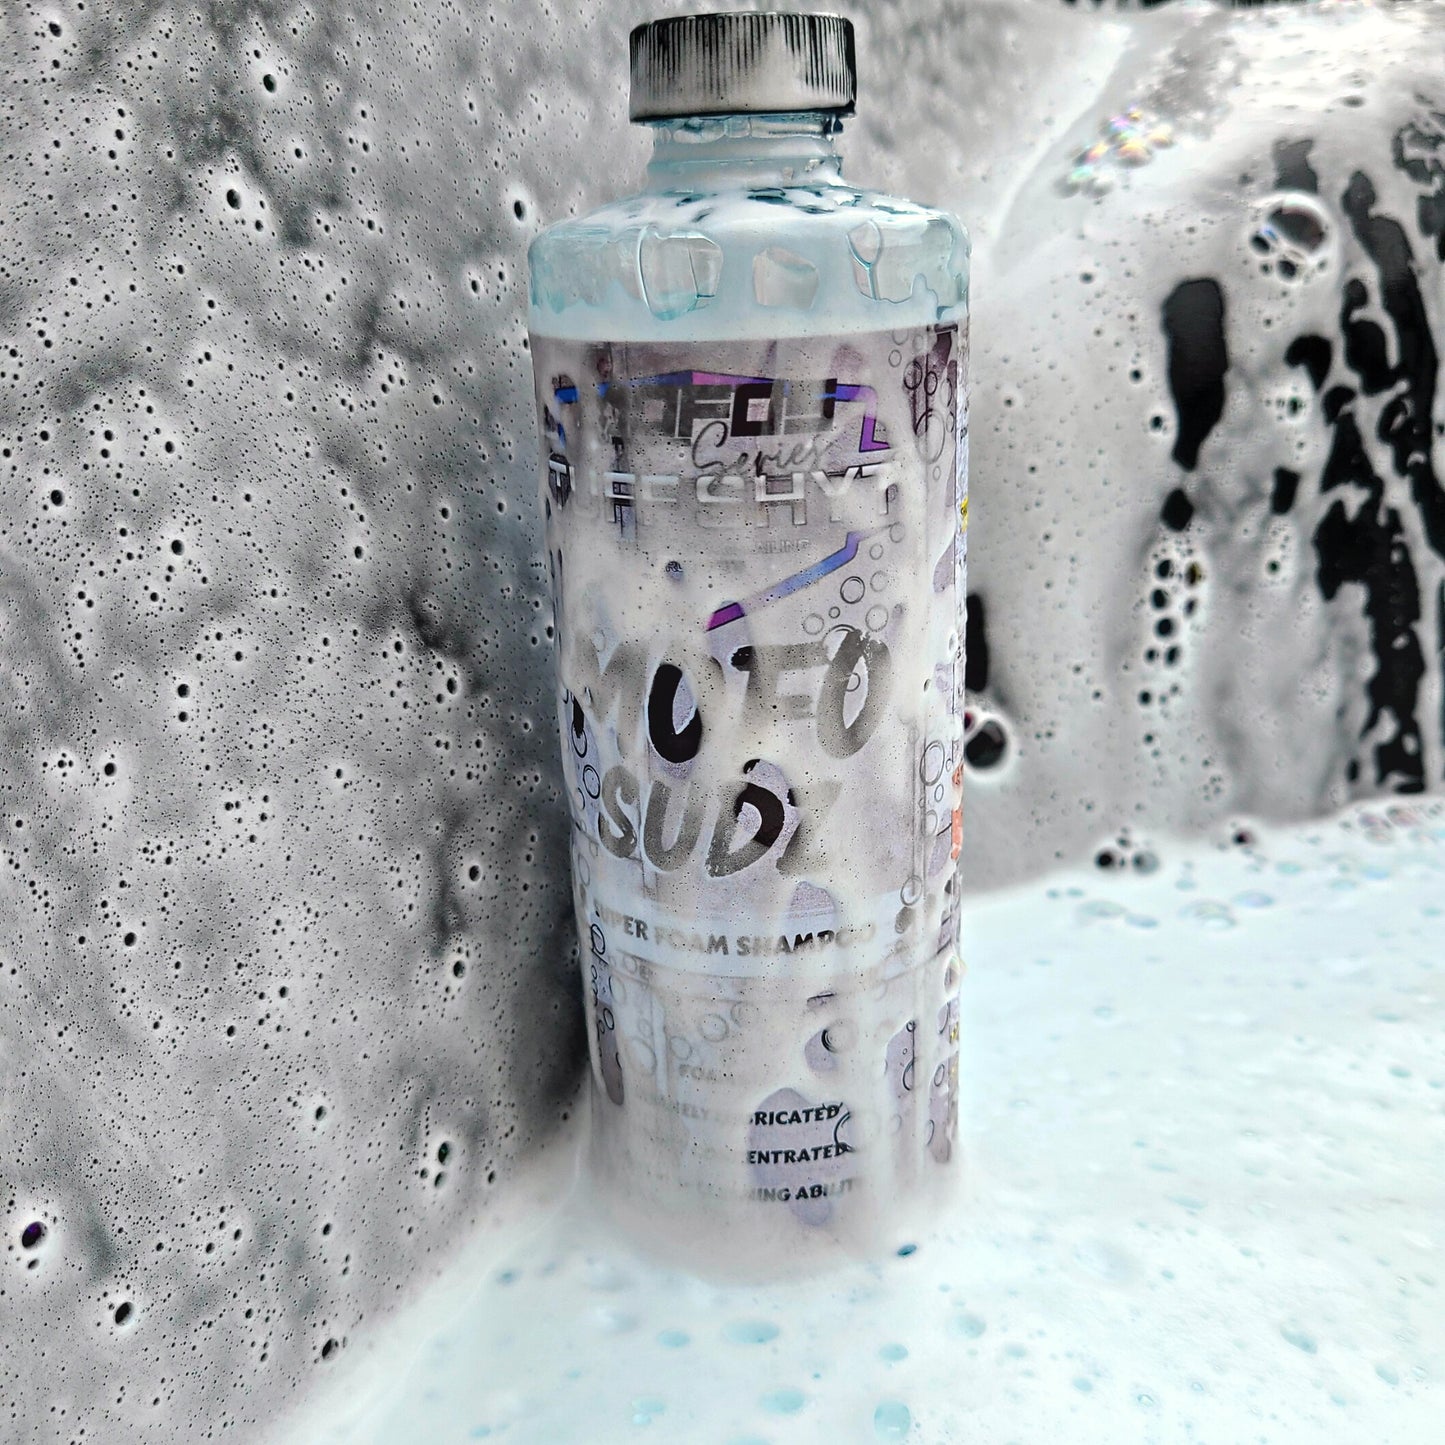 MOFO Sudz - Super Foam Shampoo-Tuff Industries